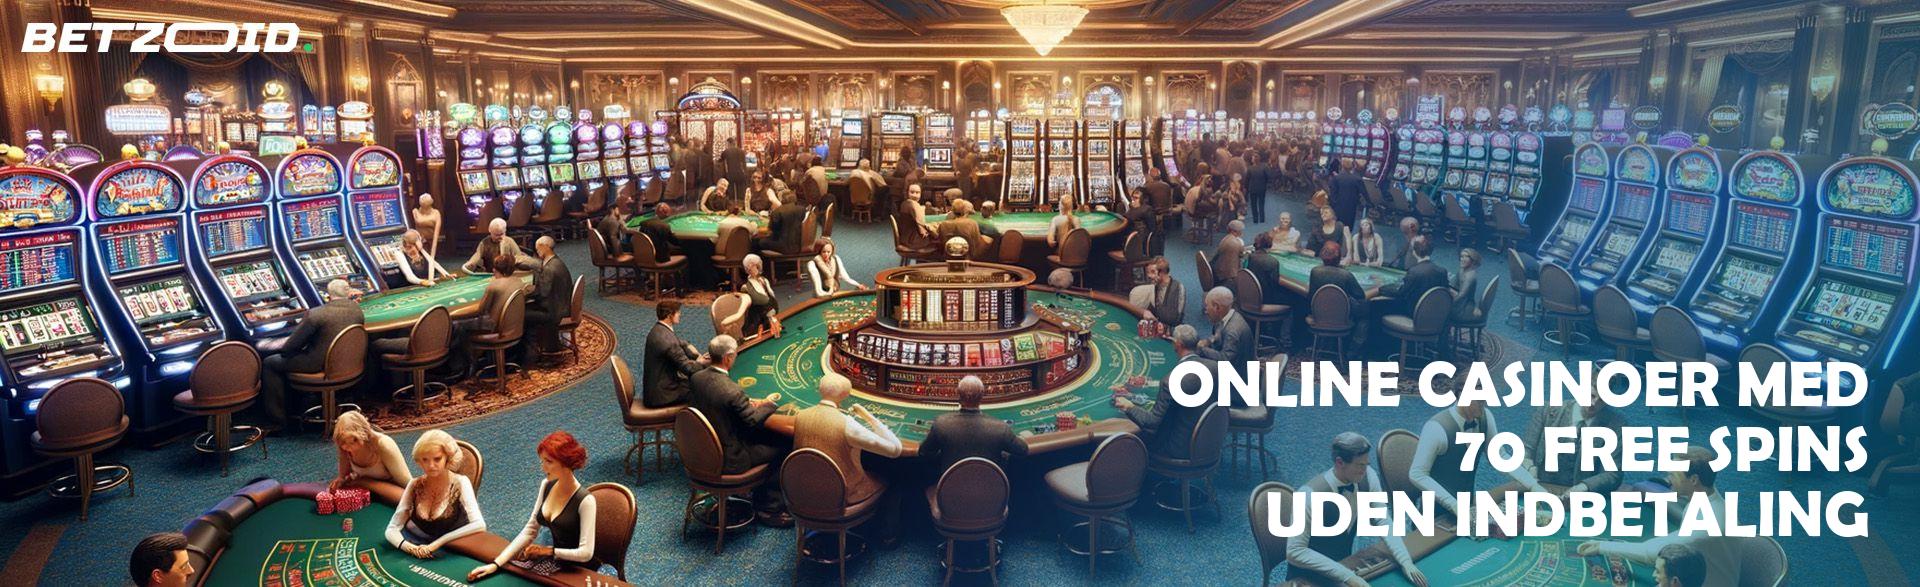 Online Casinoer med 70 Free Spins uden Indbetaling.